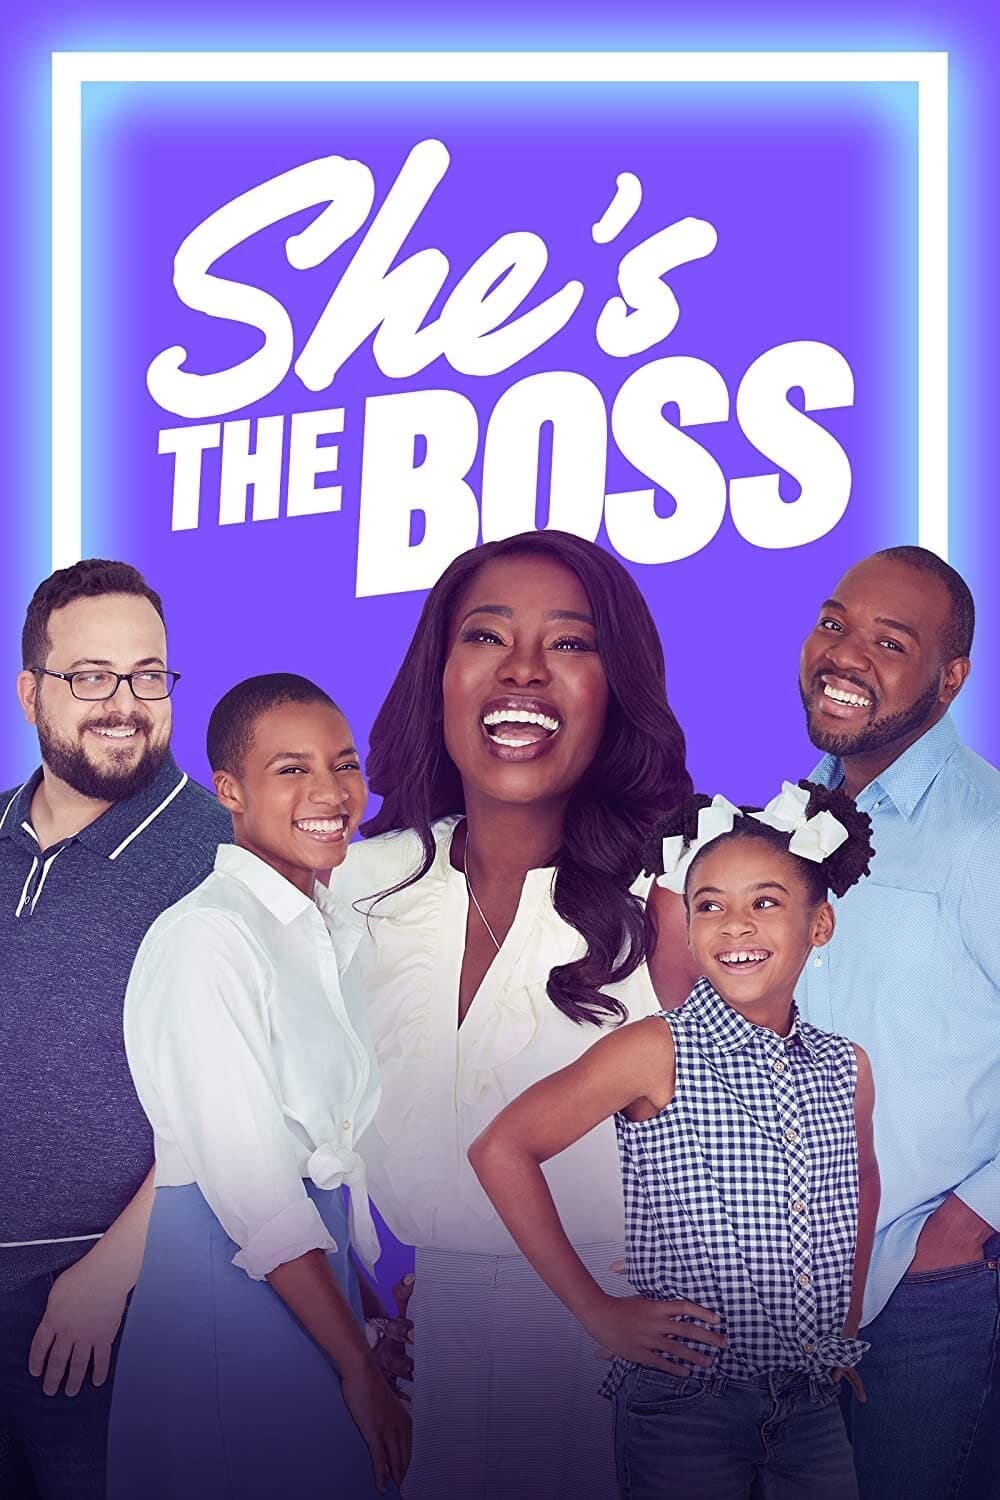 boss season 1 episode 1 watch online